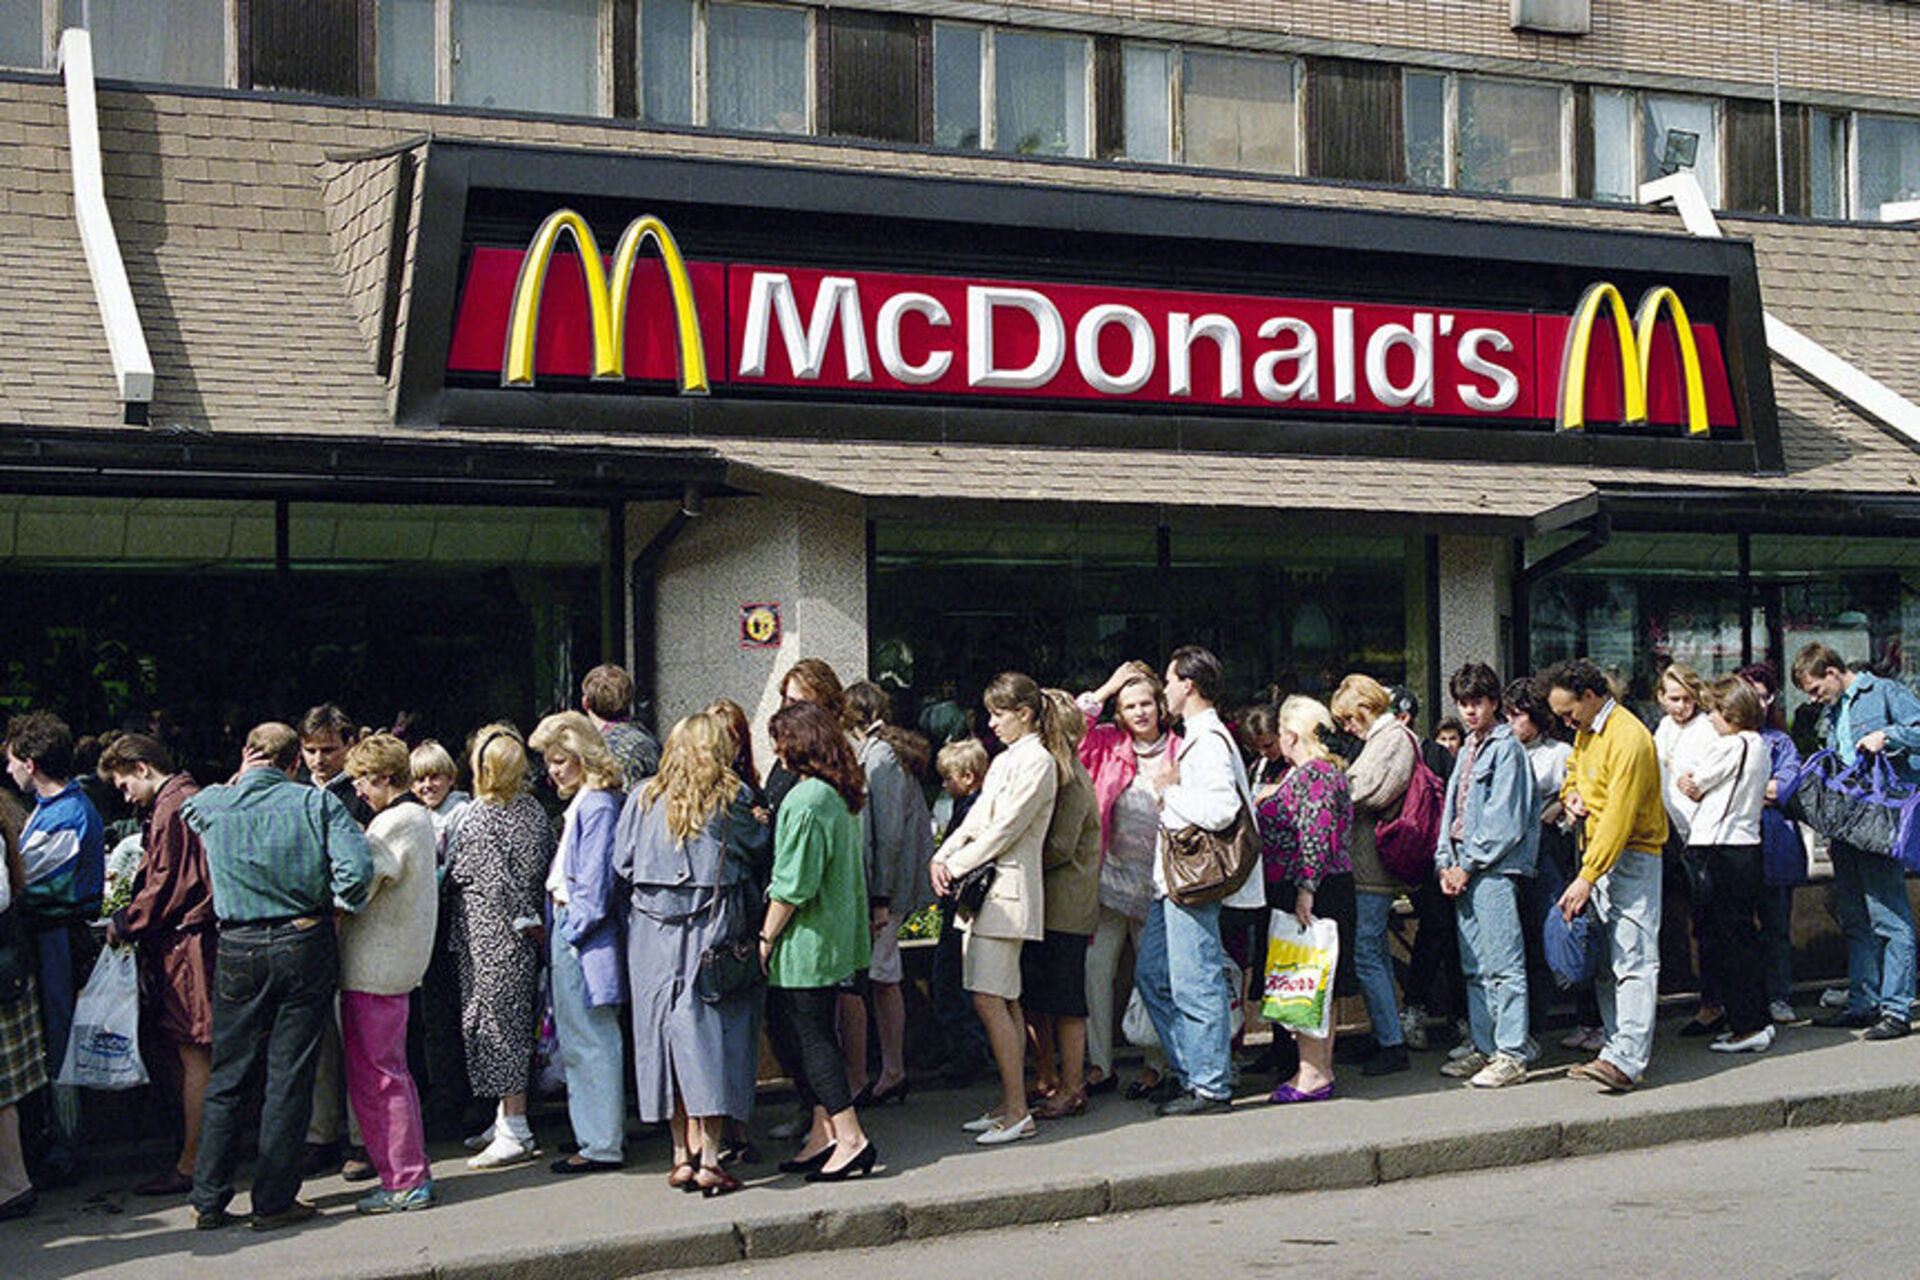 Какие макдональдсы открылись в москве. Макдональдс на Пушкинской Москва 1990 очередь. Макдоналдс на Пушкинской 1990. Первый макдональдс в Москве на Пушкинской очередь. Очередь в макдональдс 1990 Москва.